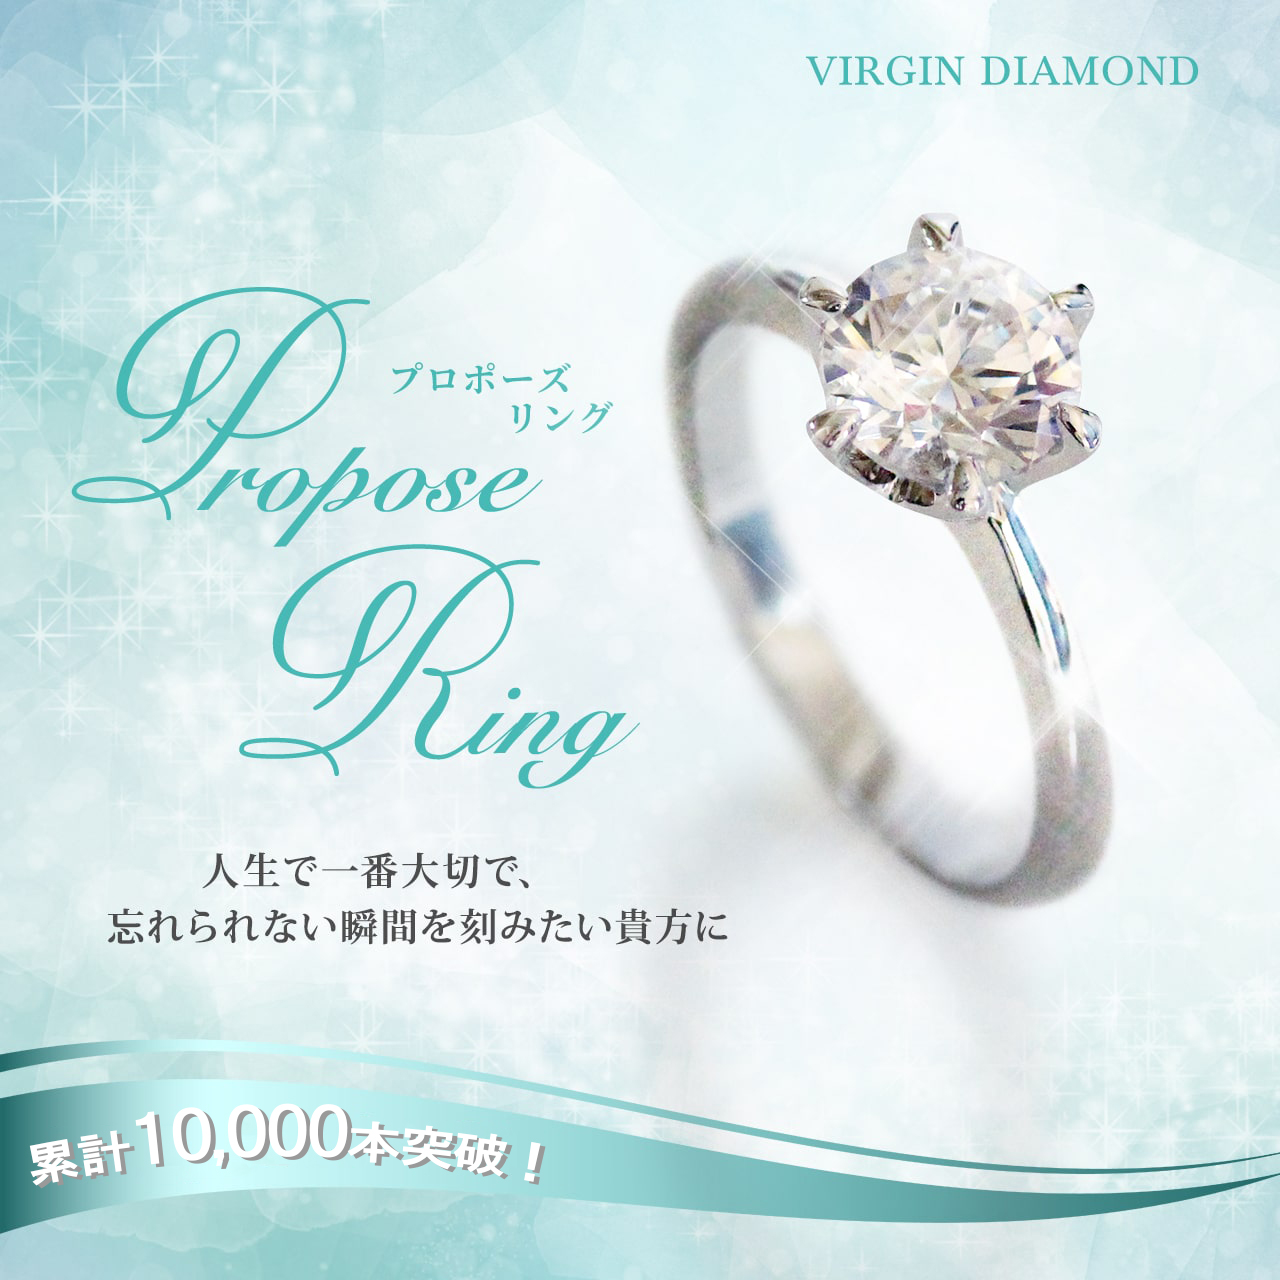 sa приз Propo -z кольцо обручальное кольцо обручальное кольцо . примерно кольцо серебряный женский память день день св. Валентина 1 десять тысяч иен дешевый White Day подарок 